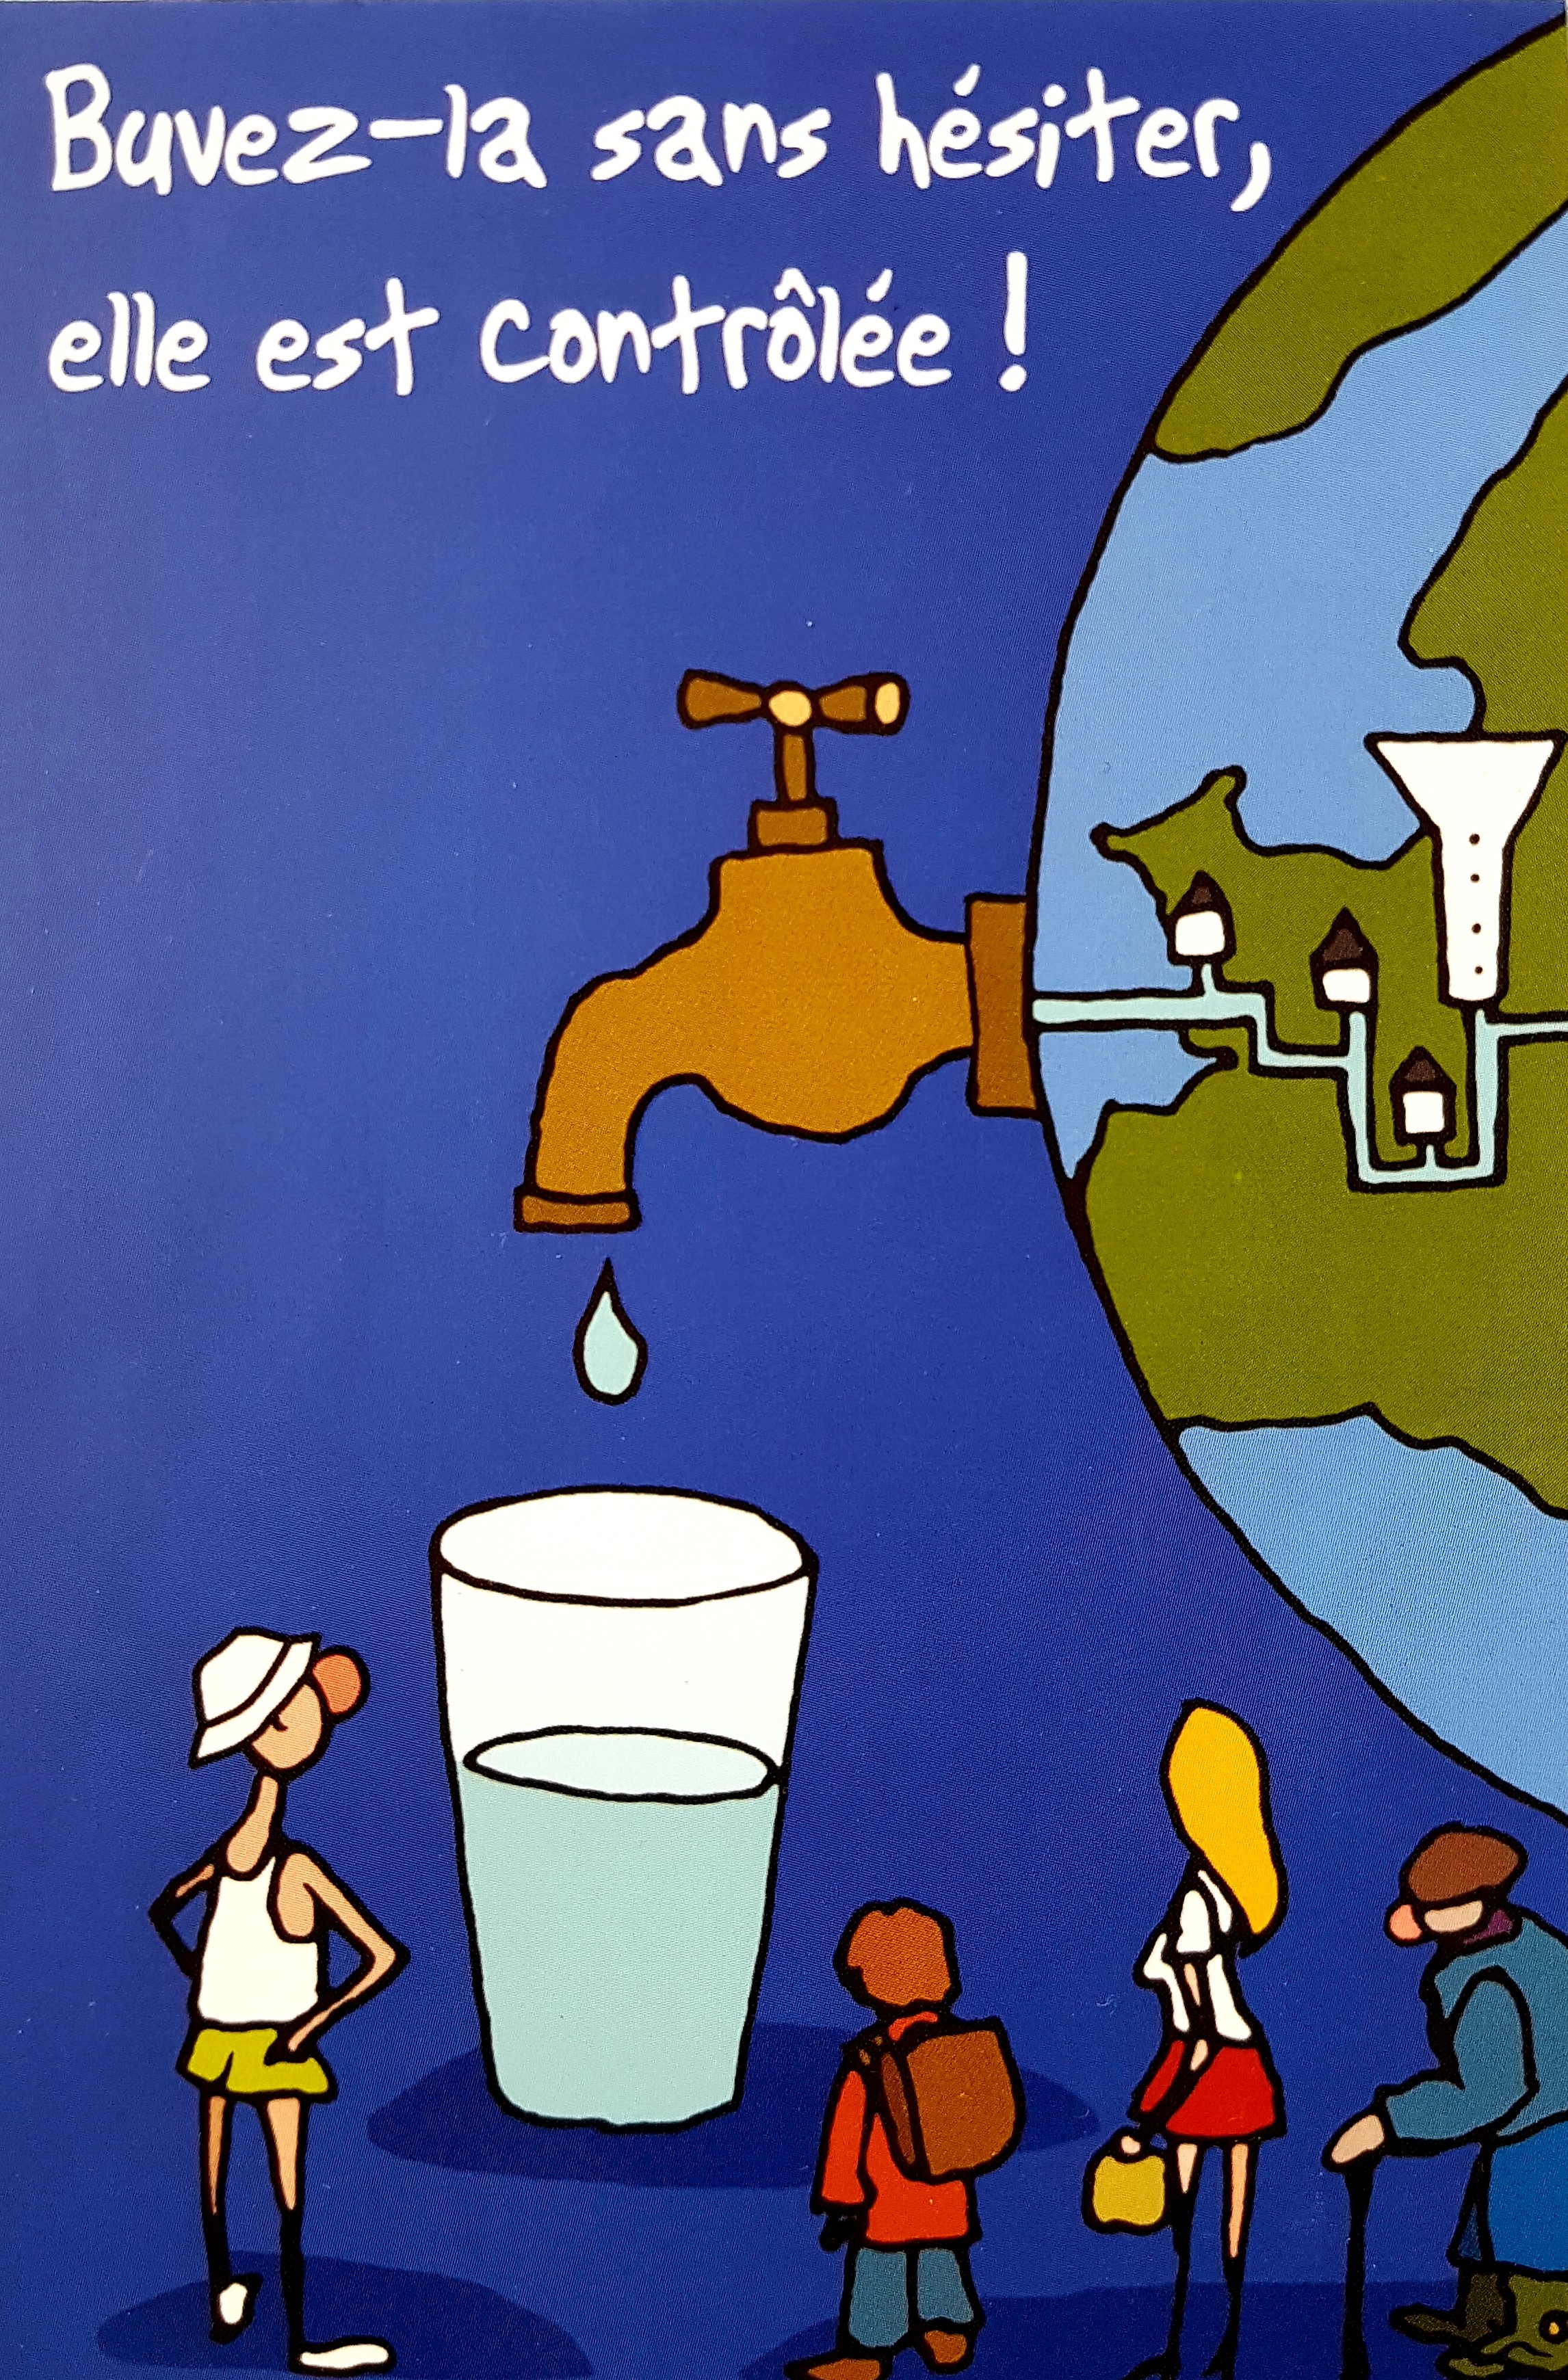 Une carte postale sur laquelle la planete terre distribue de l'eau via un robinet et c'est inscrit "buvez-la sans hésiter, elle est contrôlée"